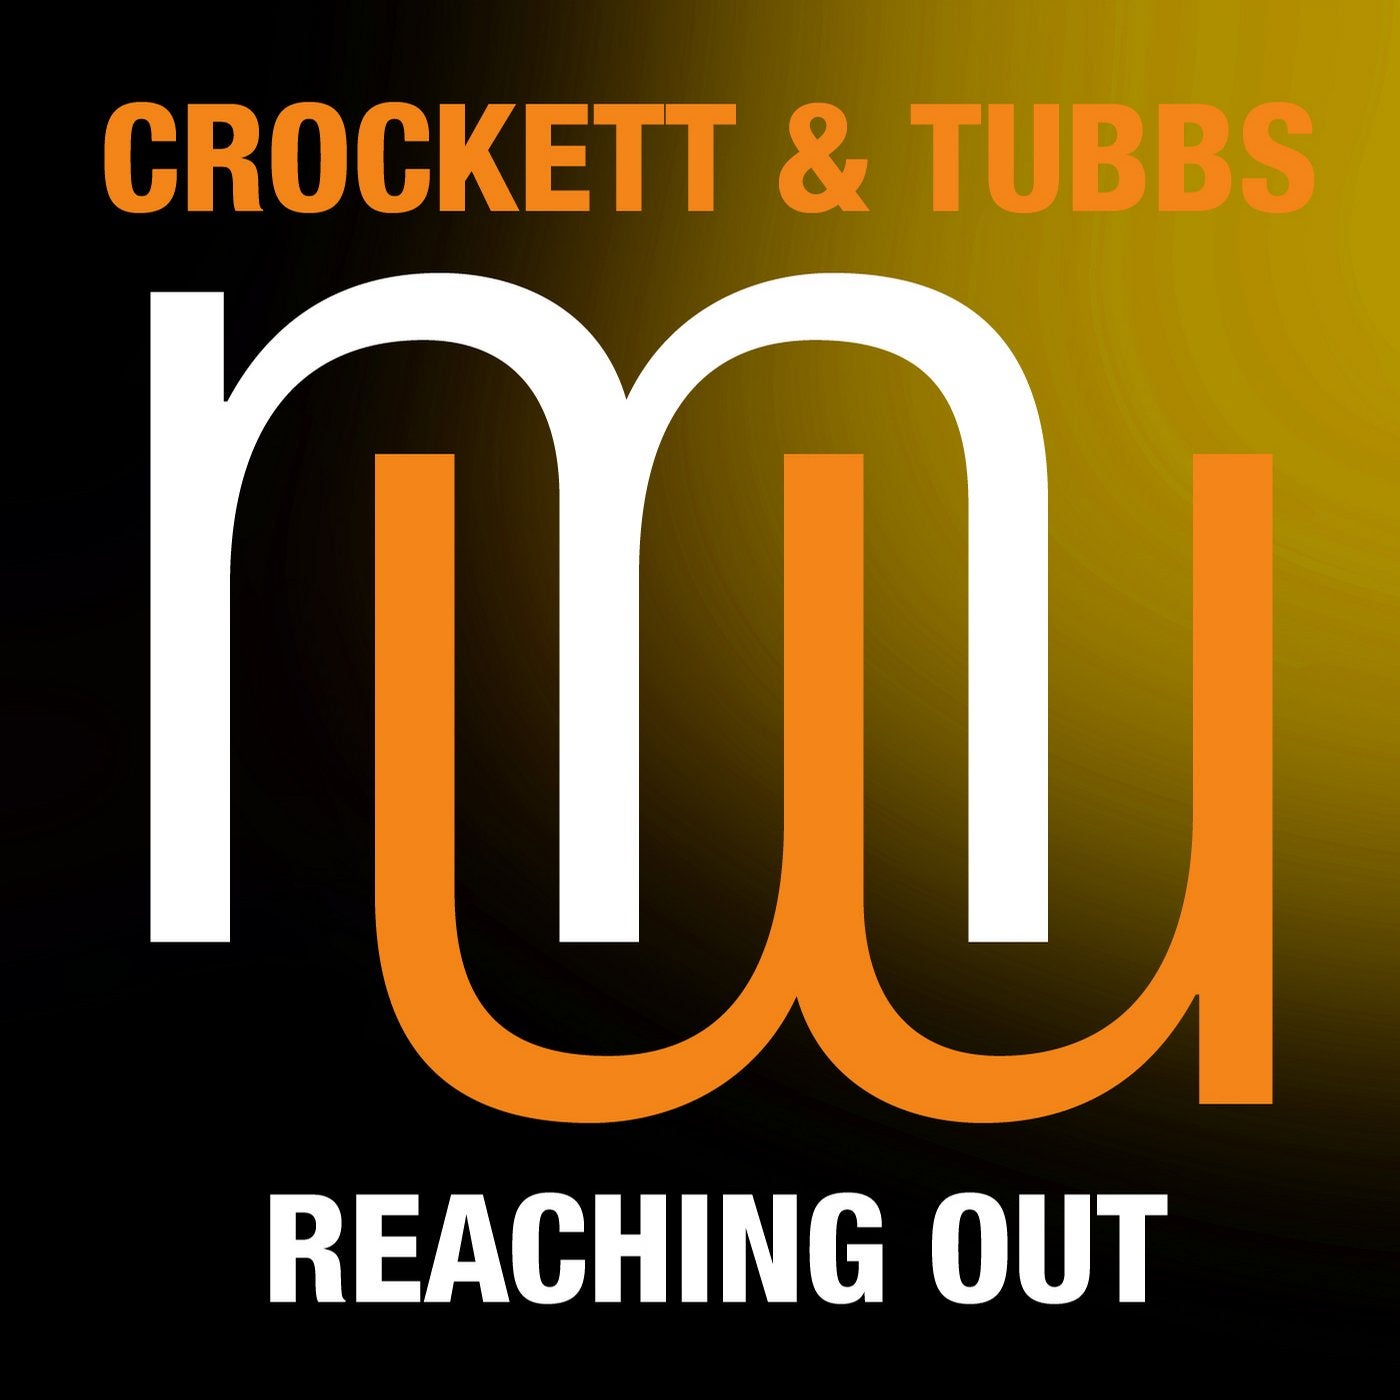 Crockett & Tubbs - Reaching Out